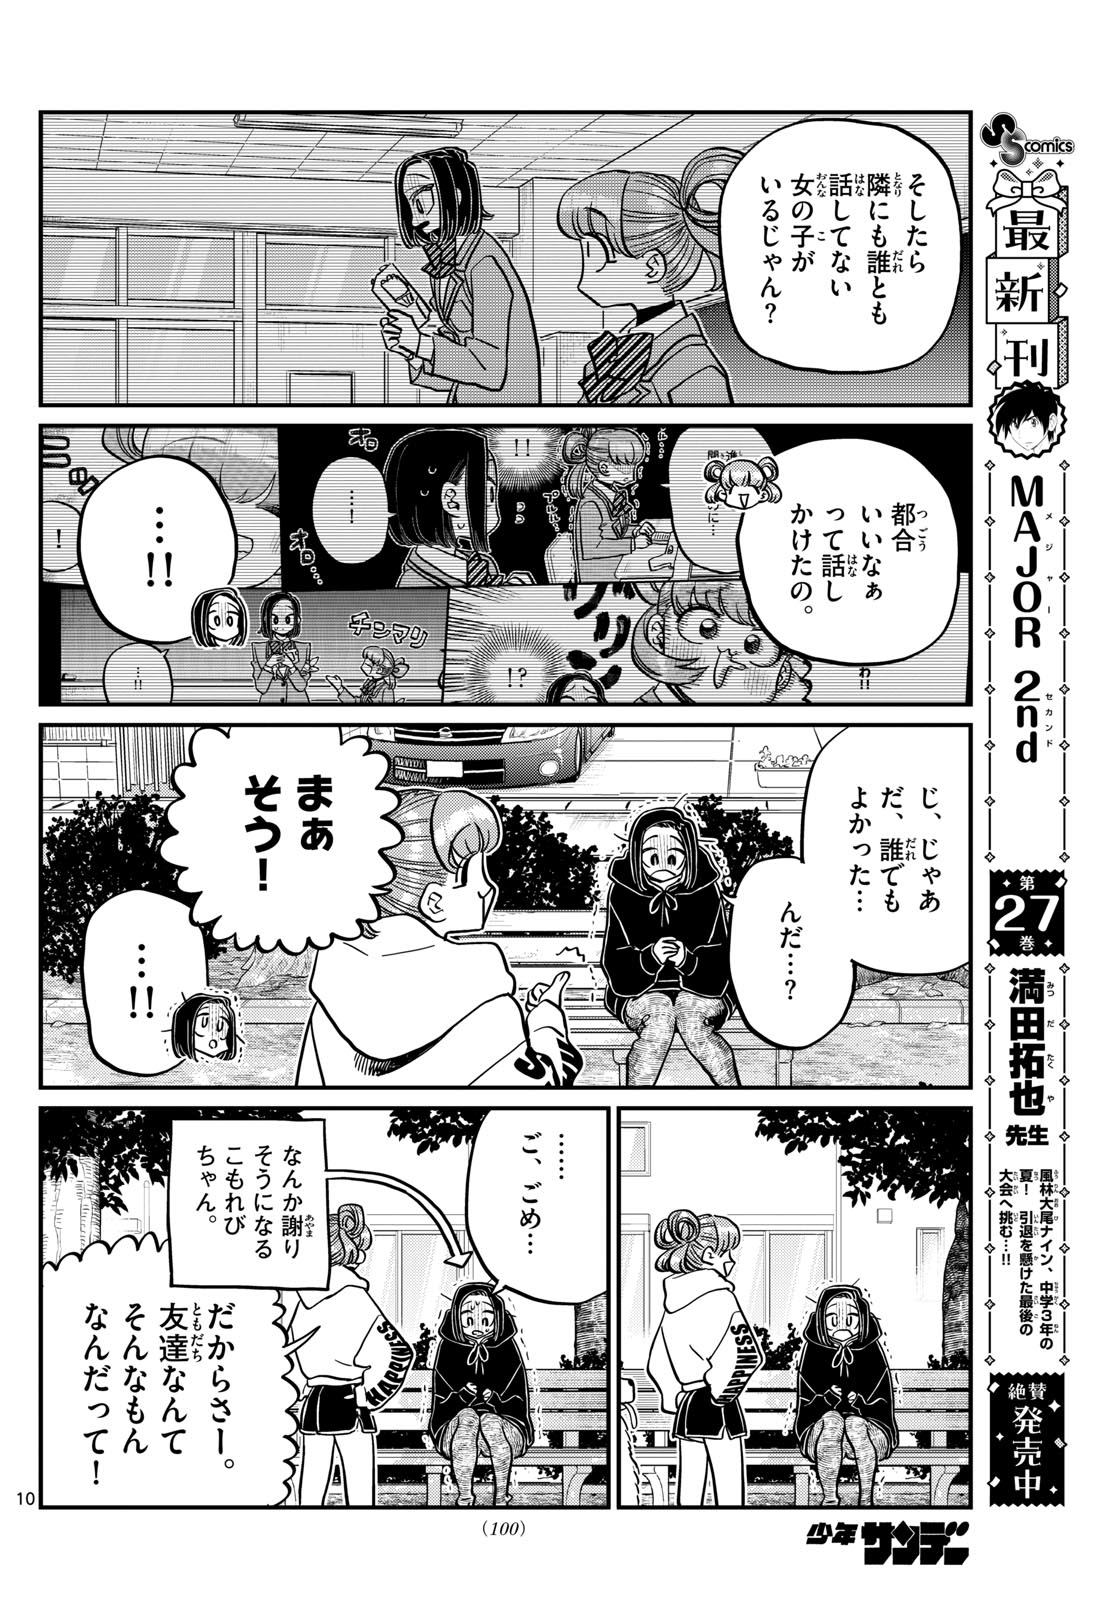 Komi-san wa Komyushou Desu - Chapter 436 - Page 10